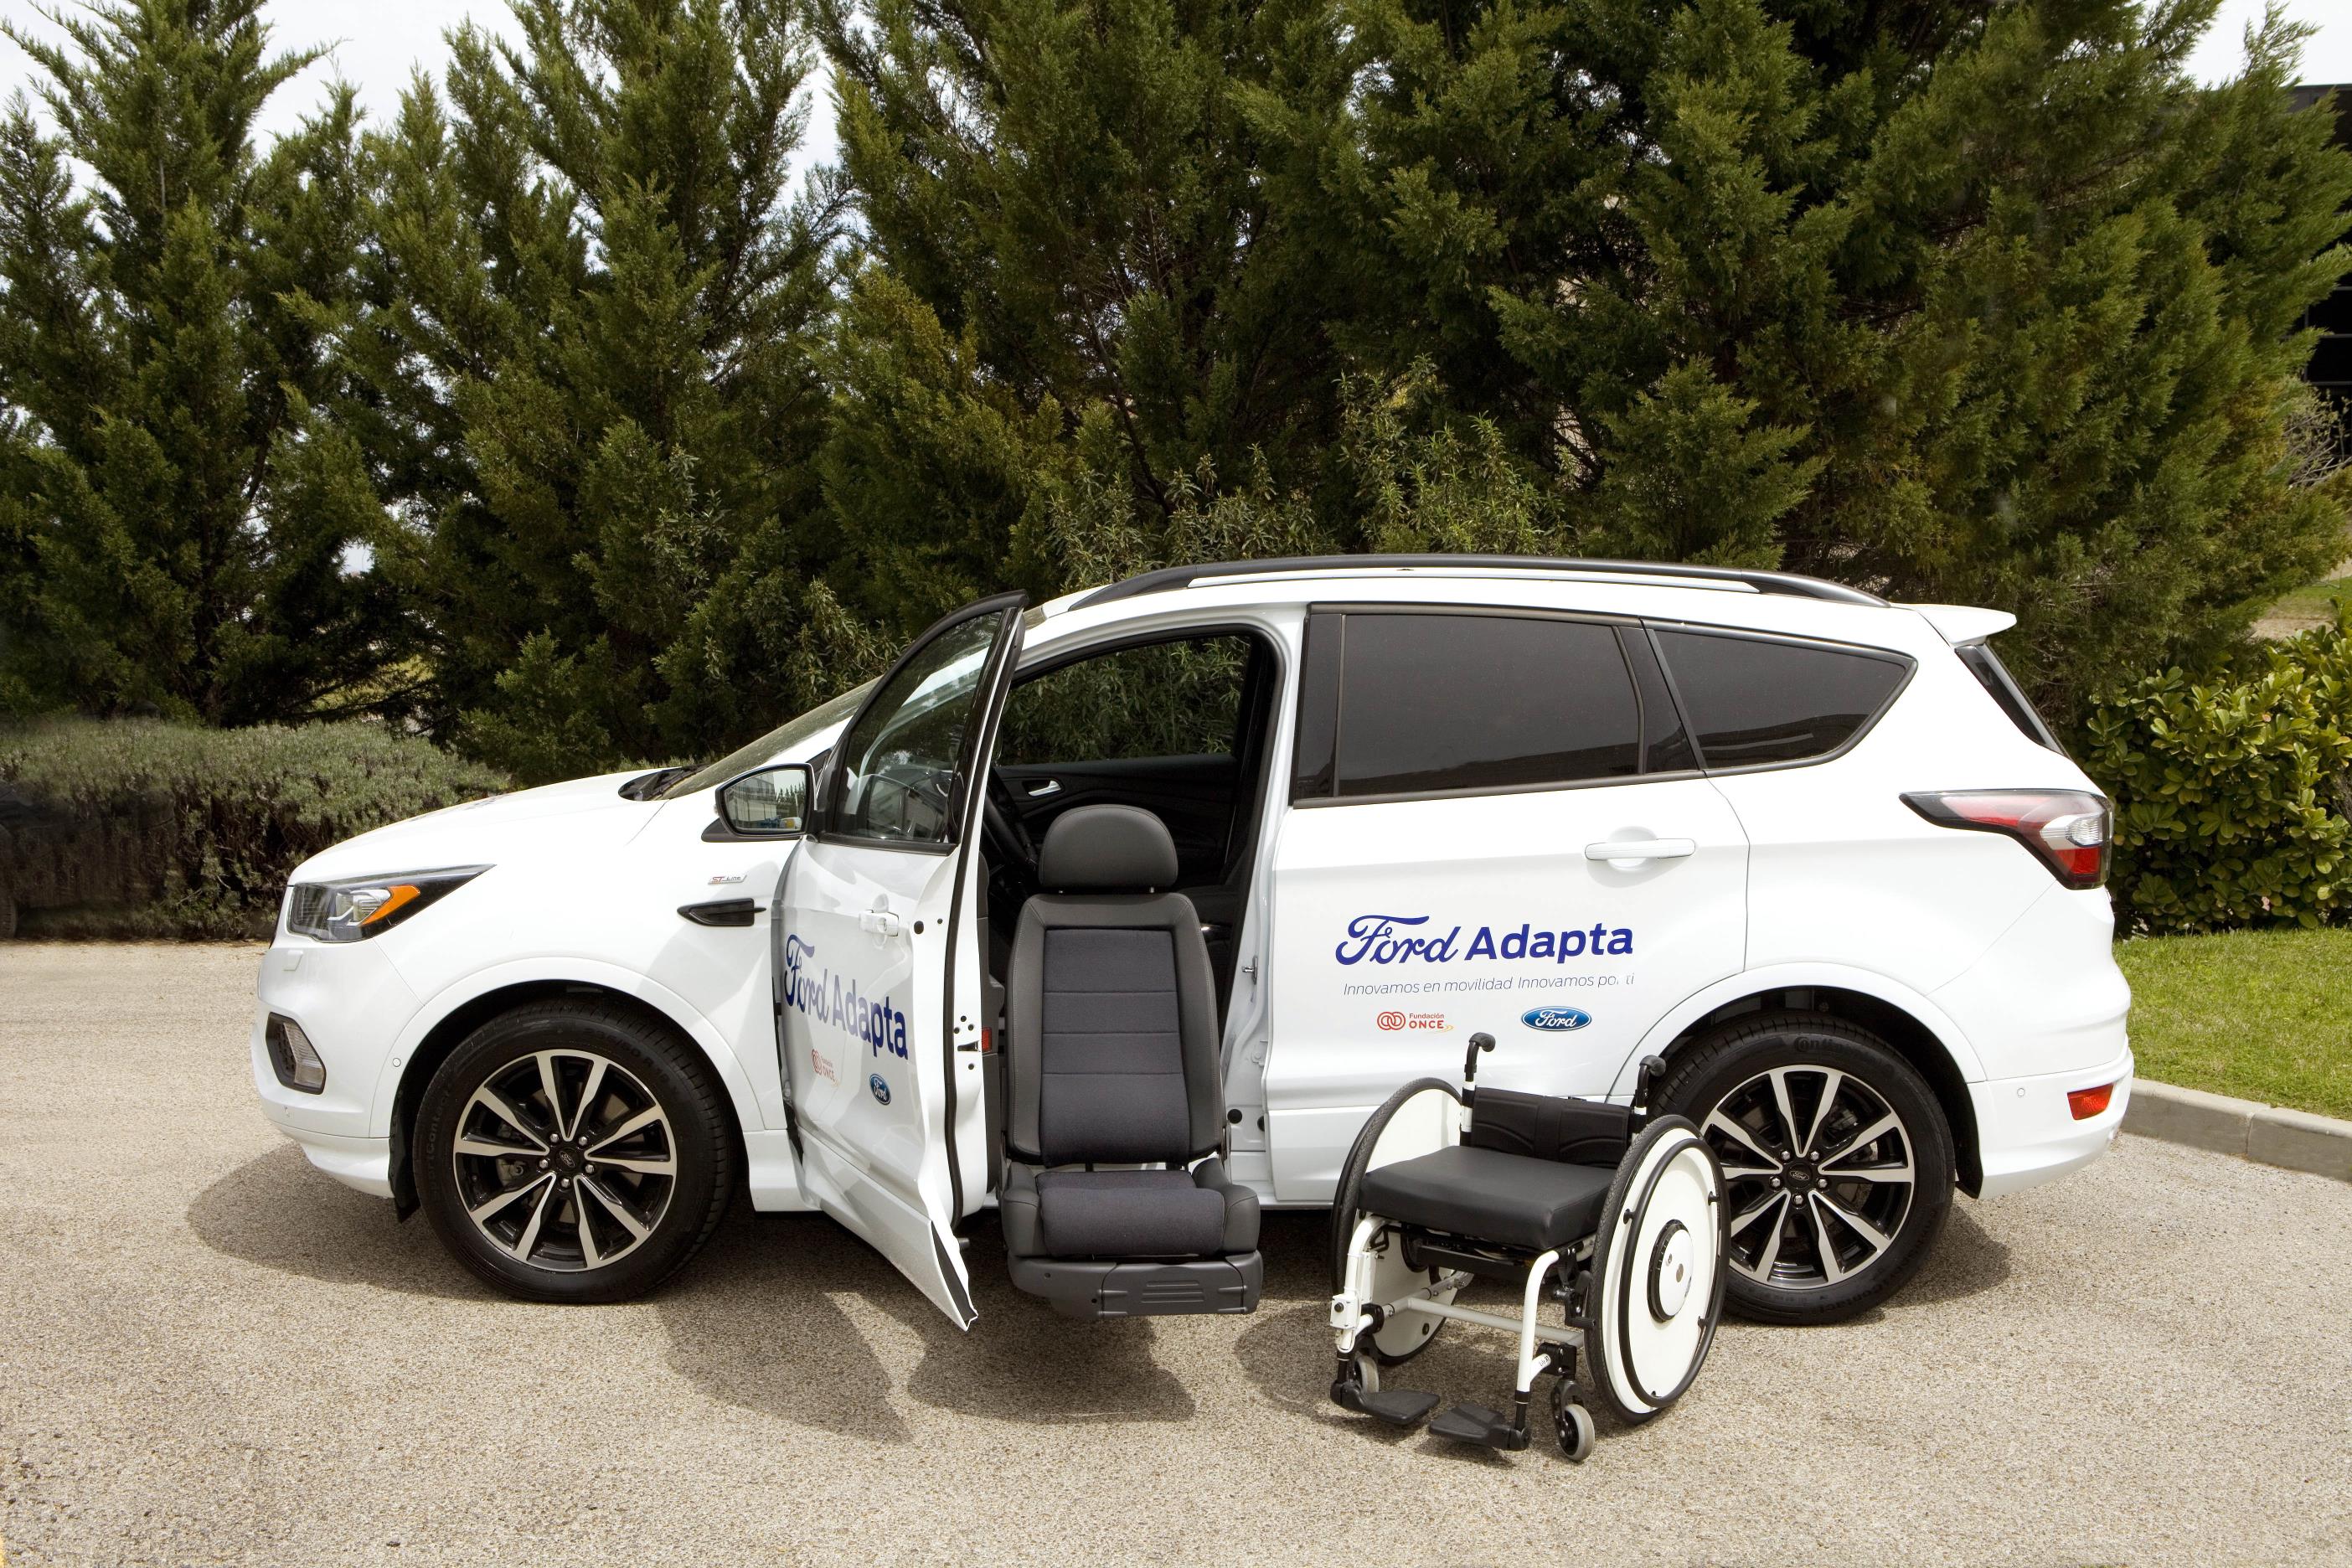 Ford presenta el prototipo de silla de ruedas autónoma eChair